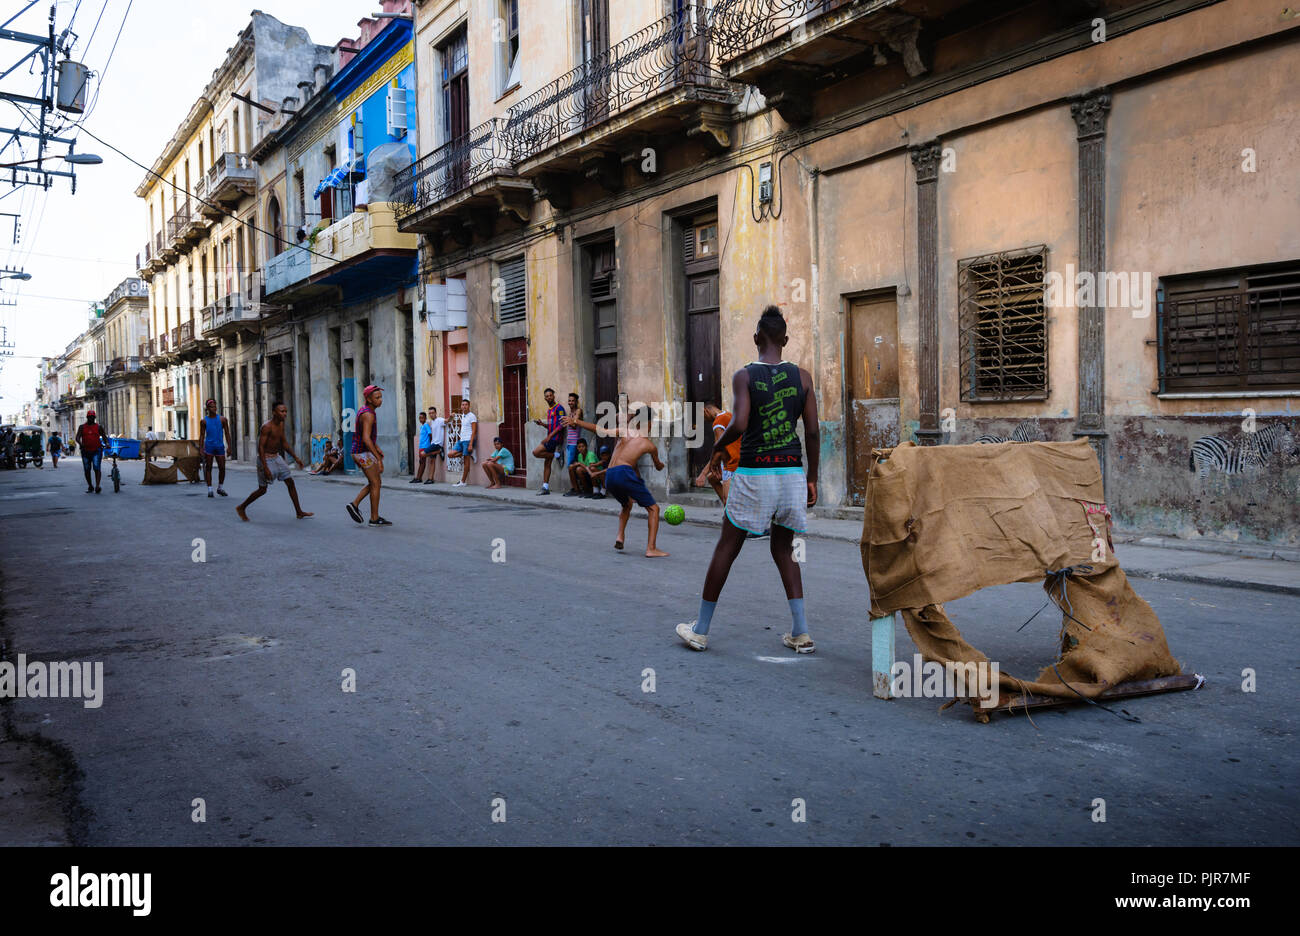 L'Avana, Cuba - CIRCA NEL MAGGIO 2017: i ragazzi che giocano a calcio per le strade di l'Avana. Questo è tipico in giro per la città. Foto Stock